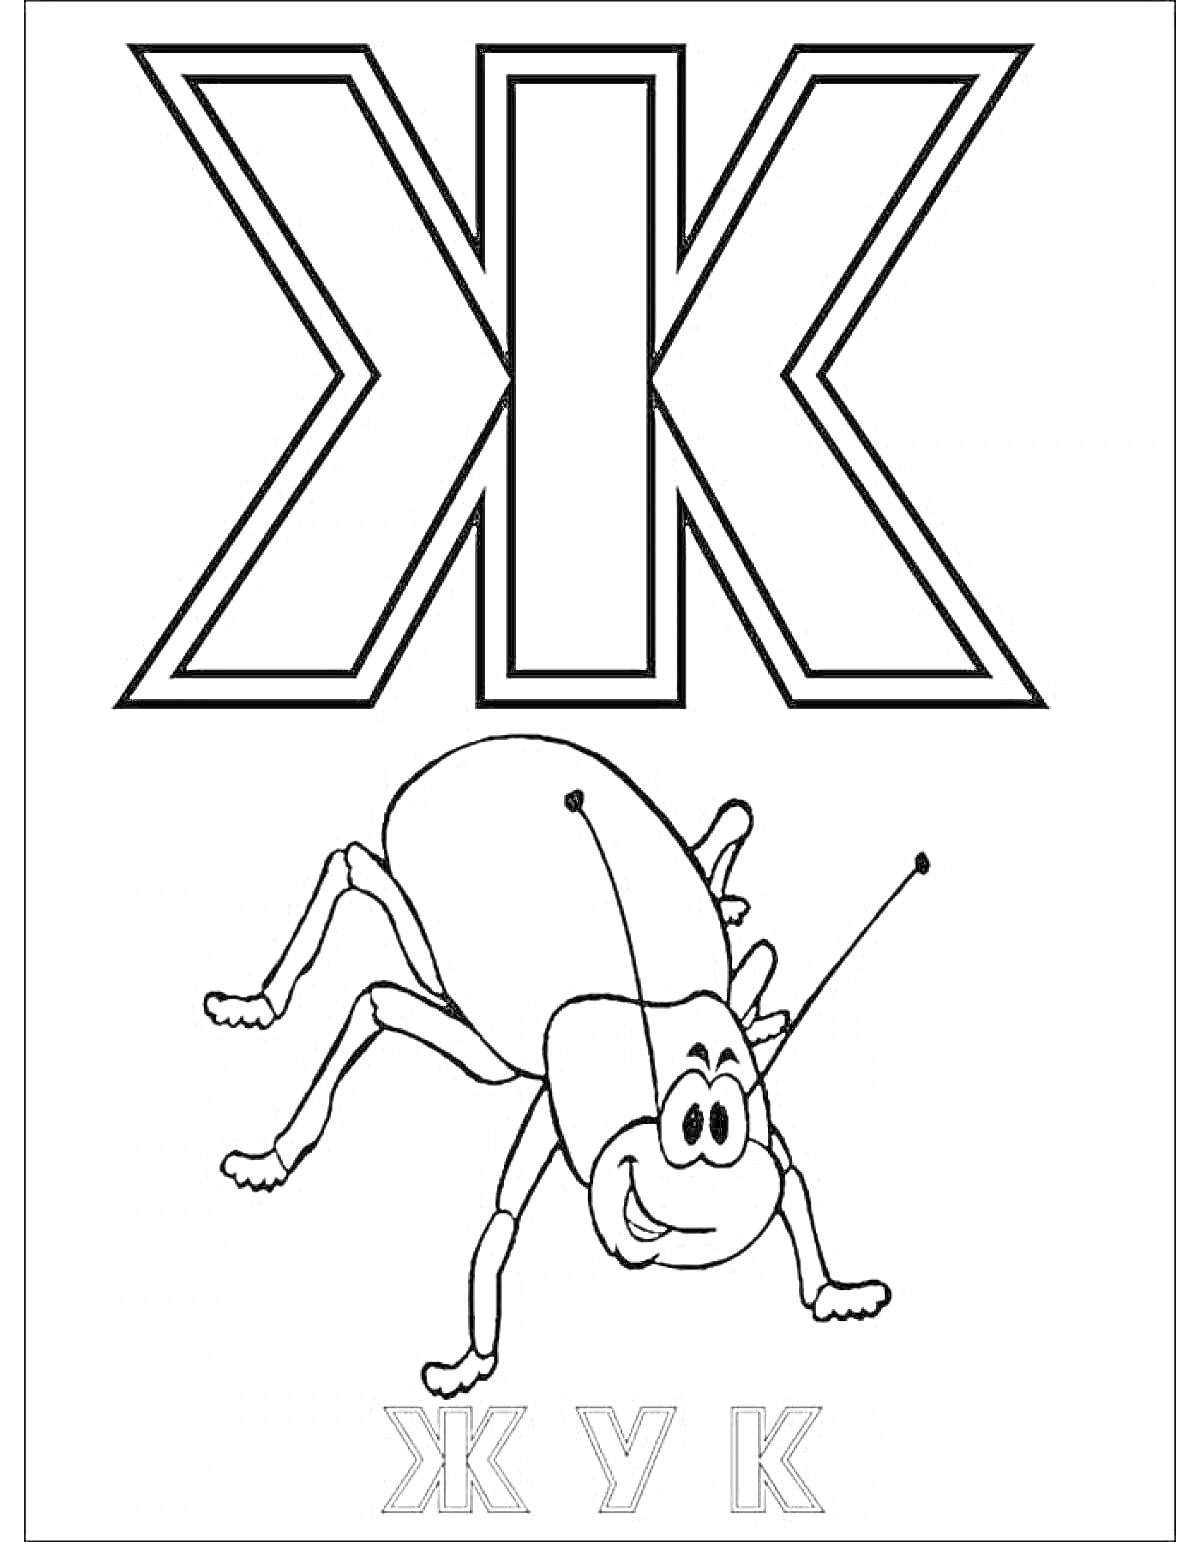 Буква Ж с жуком и подписями